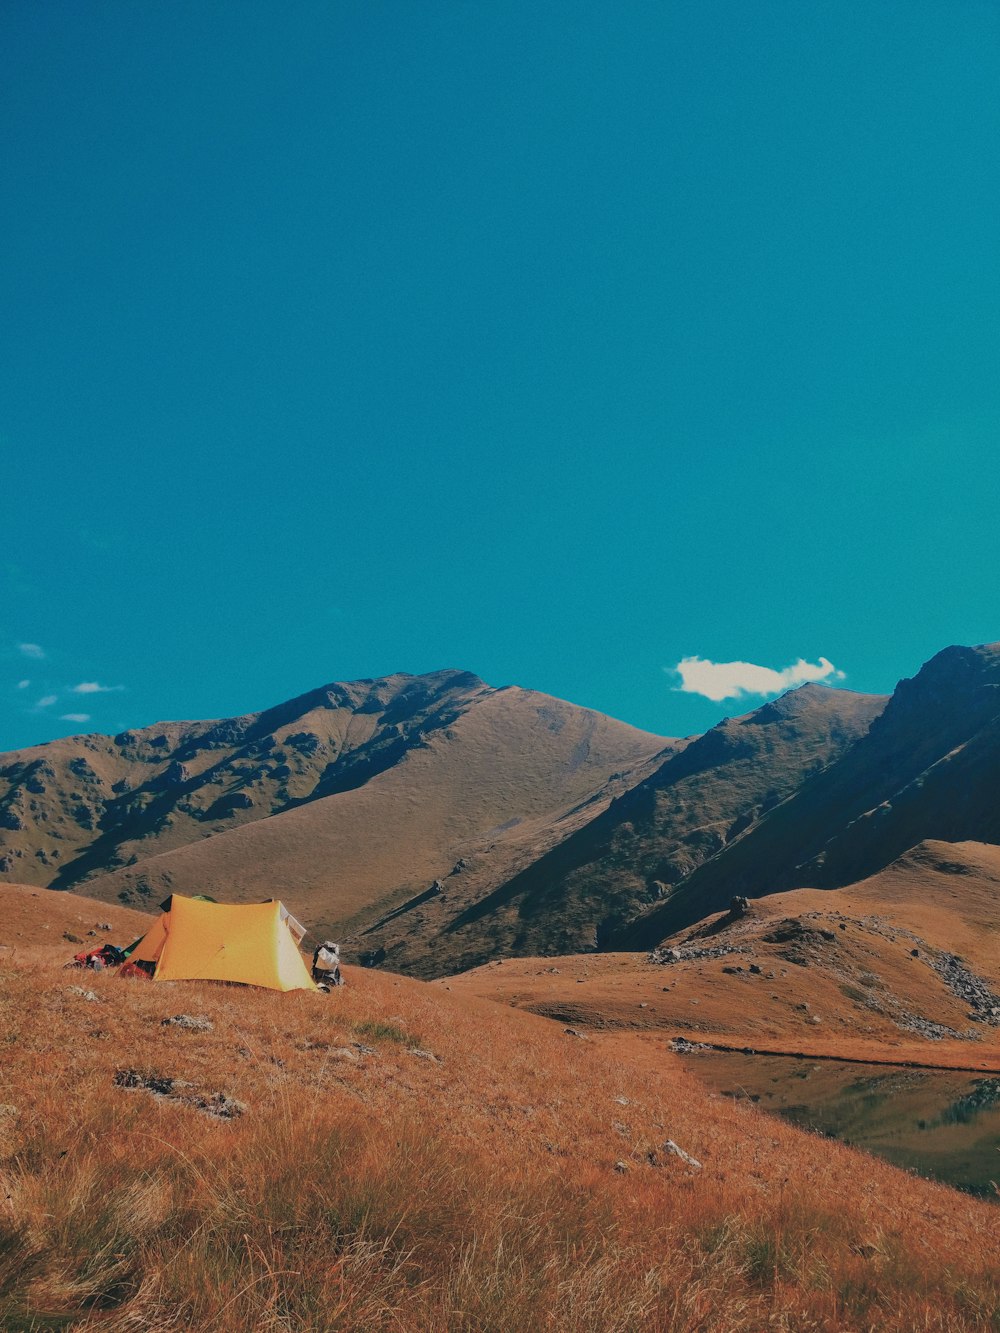 orange tent on mountain